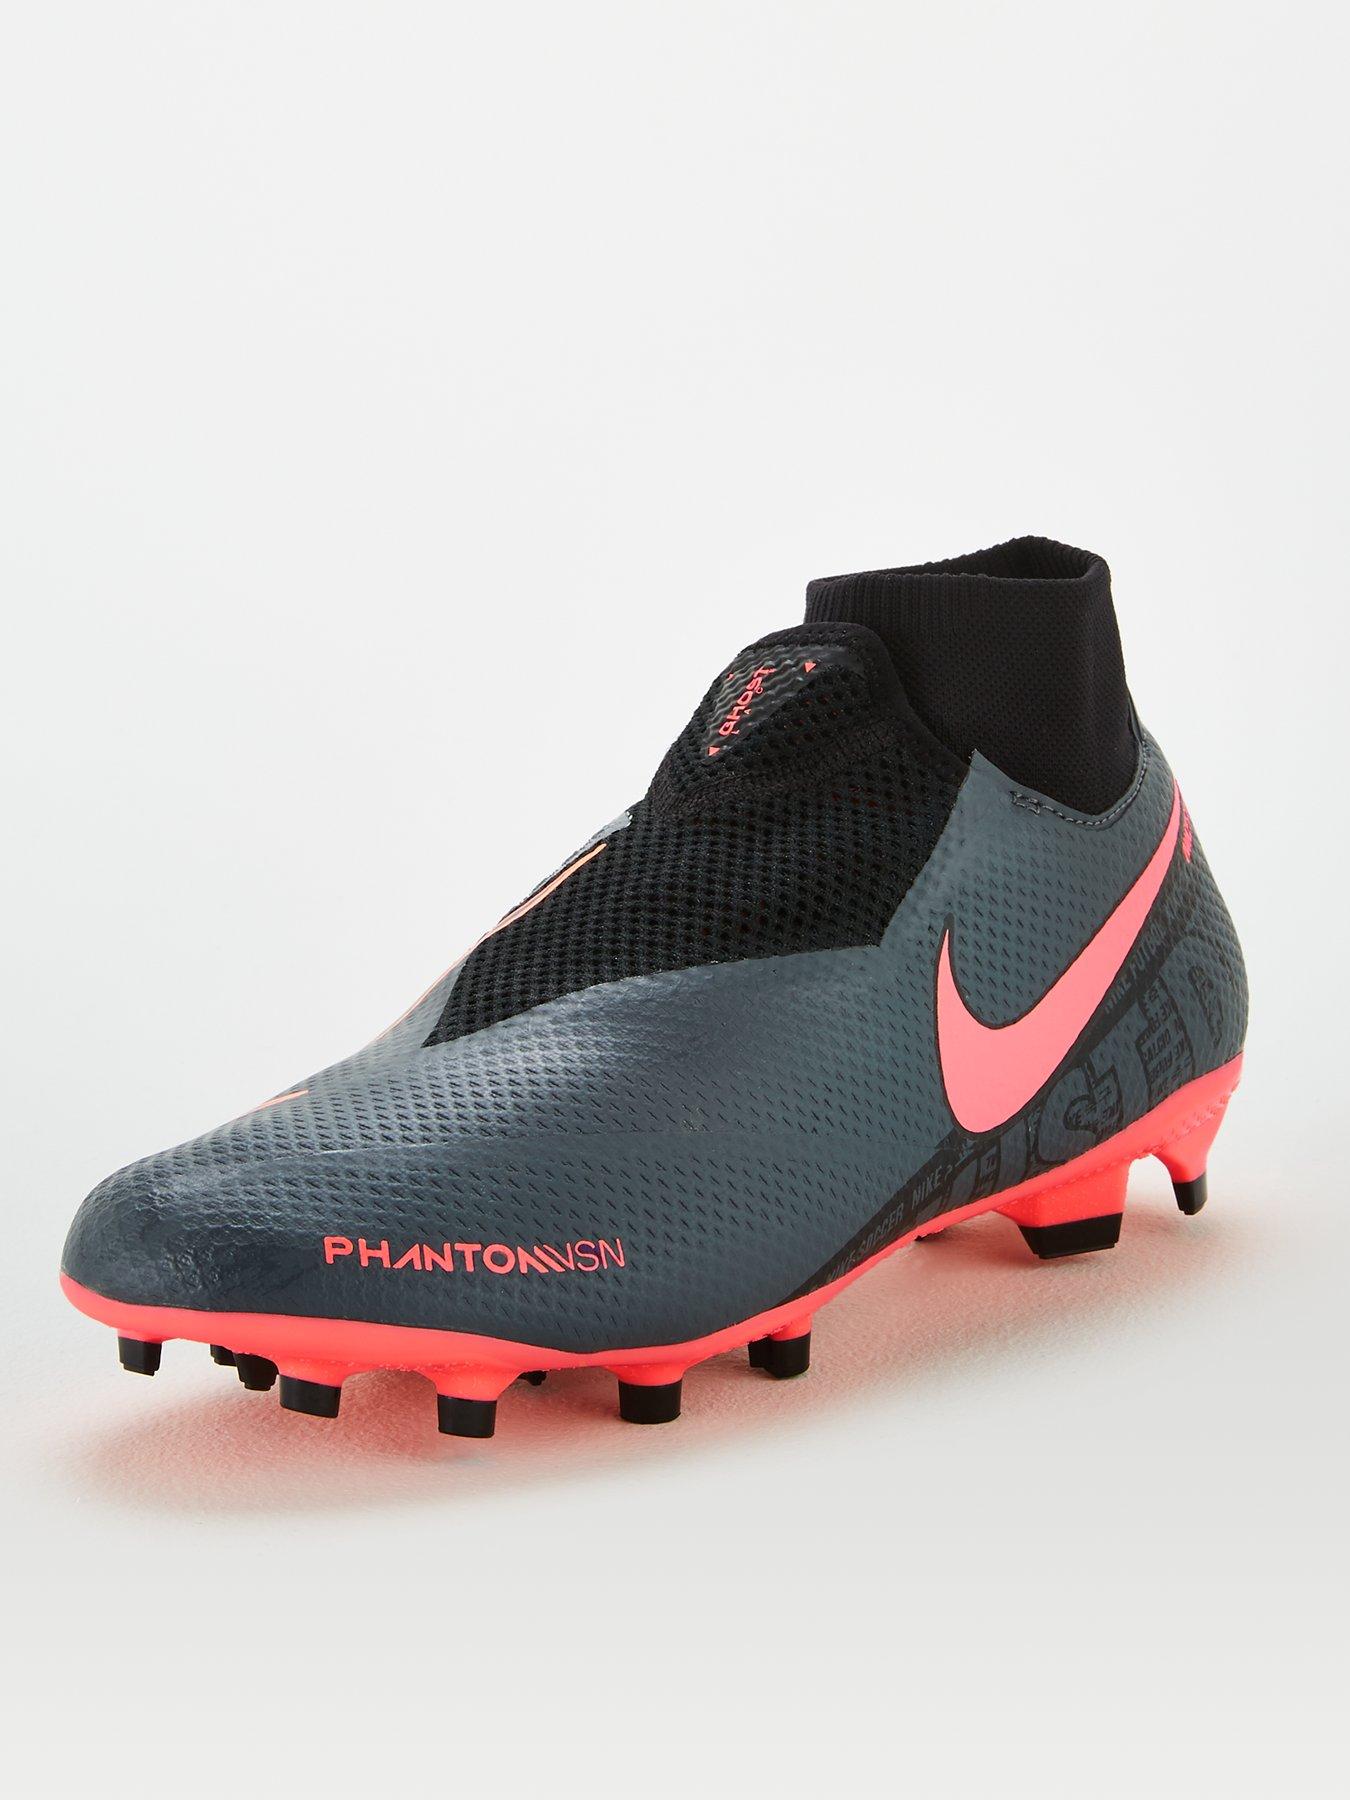 New Nike Youth Hypervenom Phantom III 3 DF FG Soccer